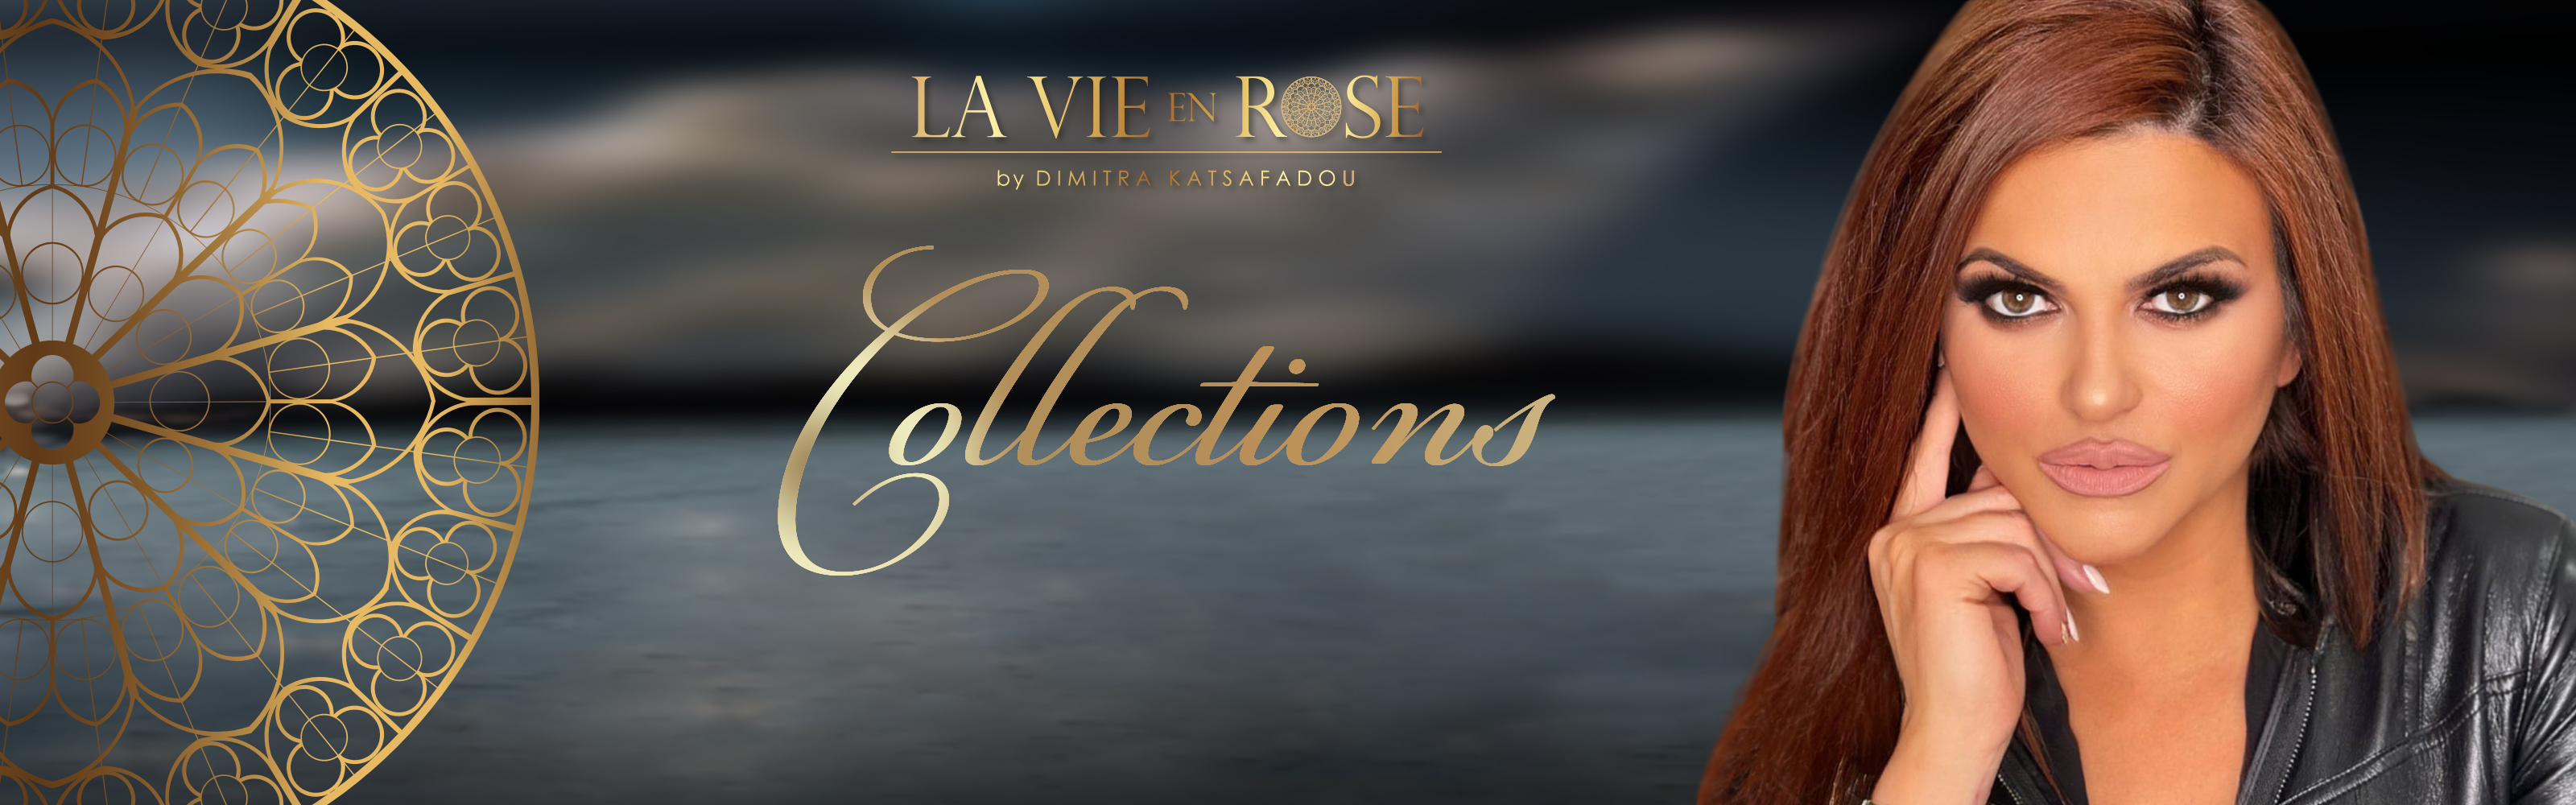 La vie en rose collections